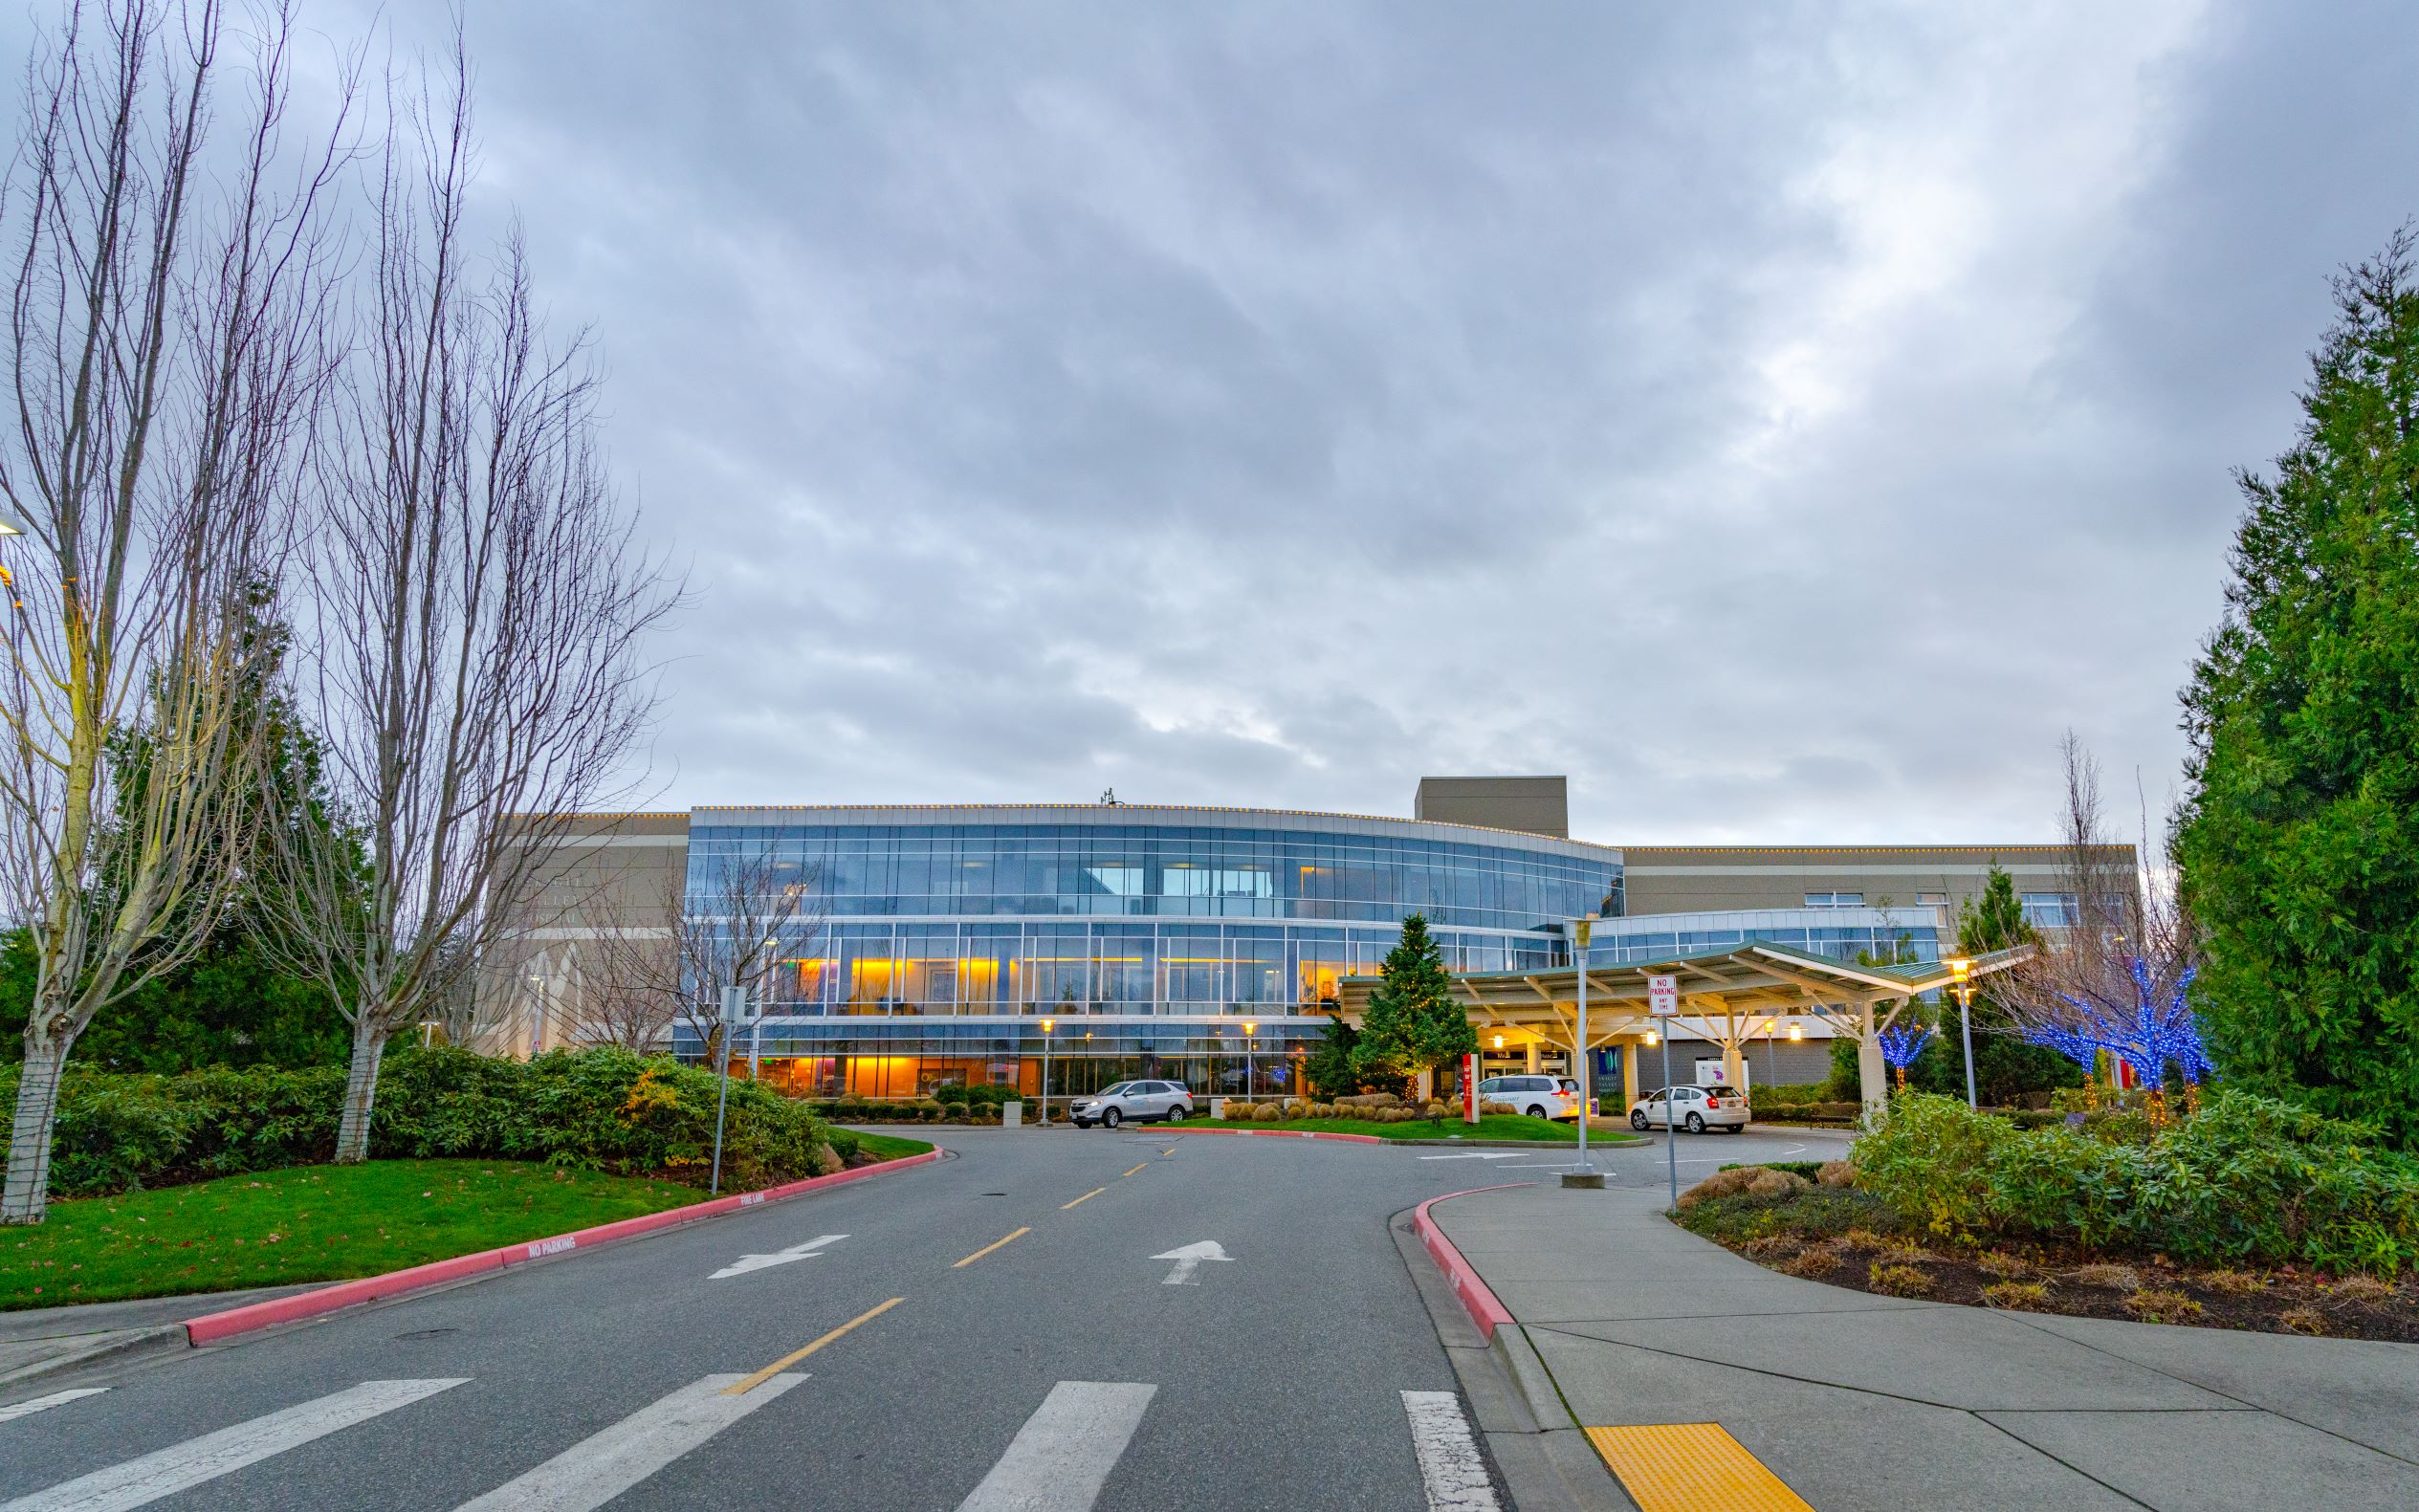 Skagit Valley Hospital